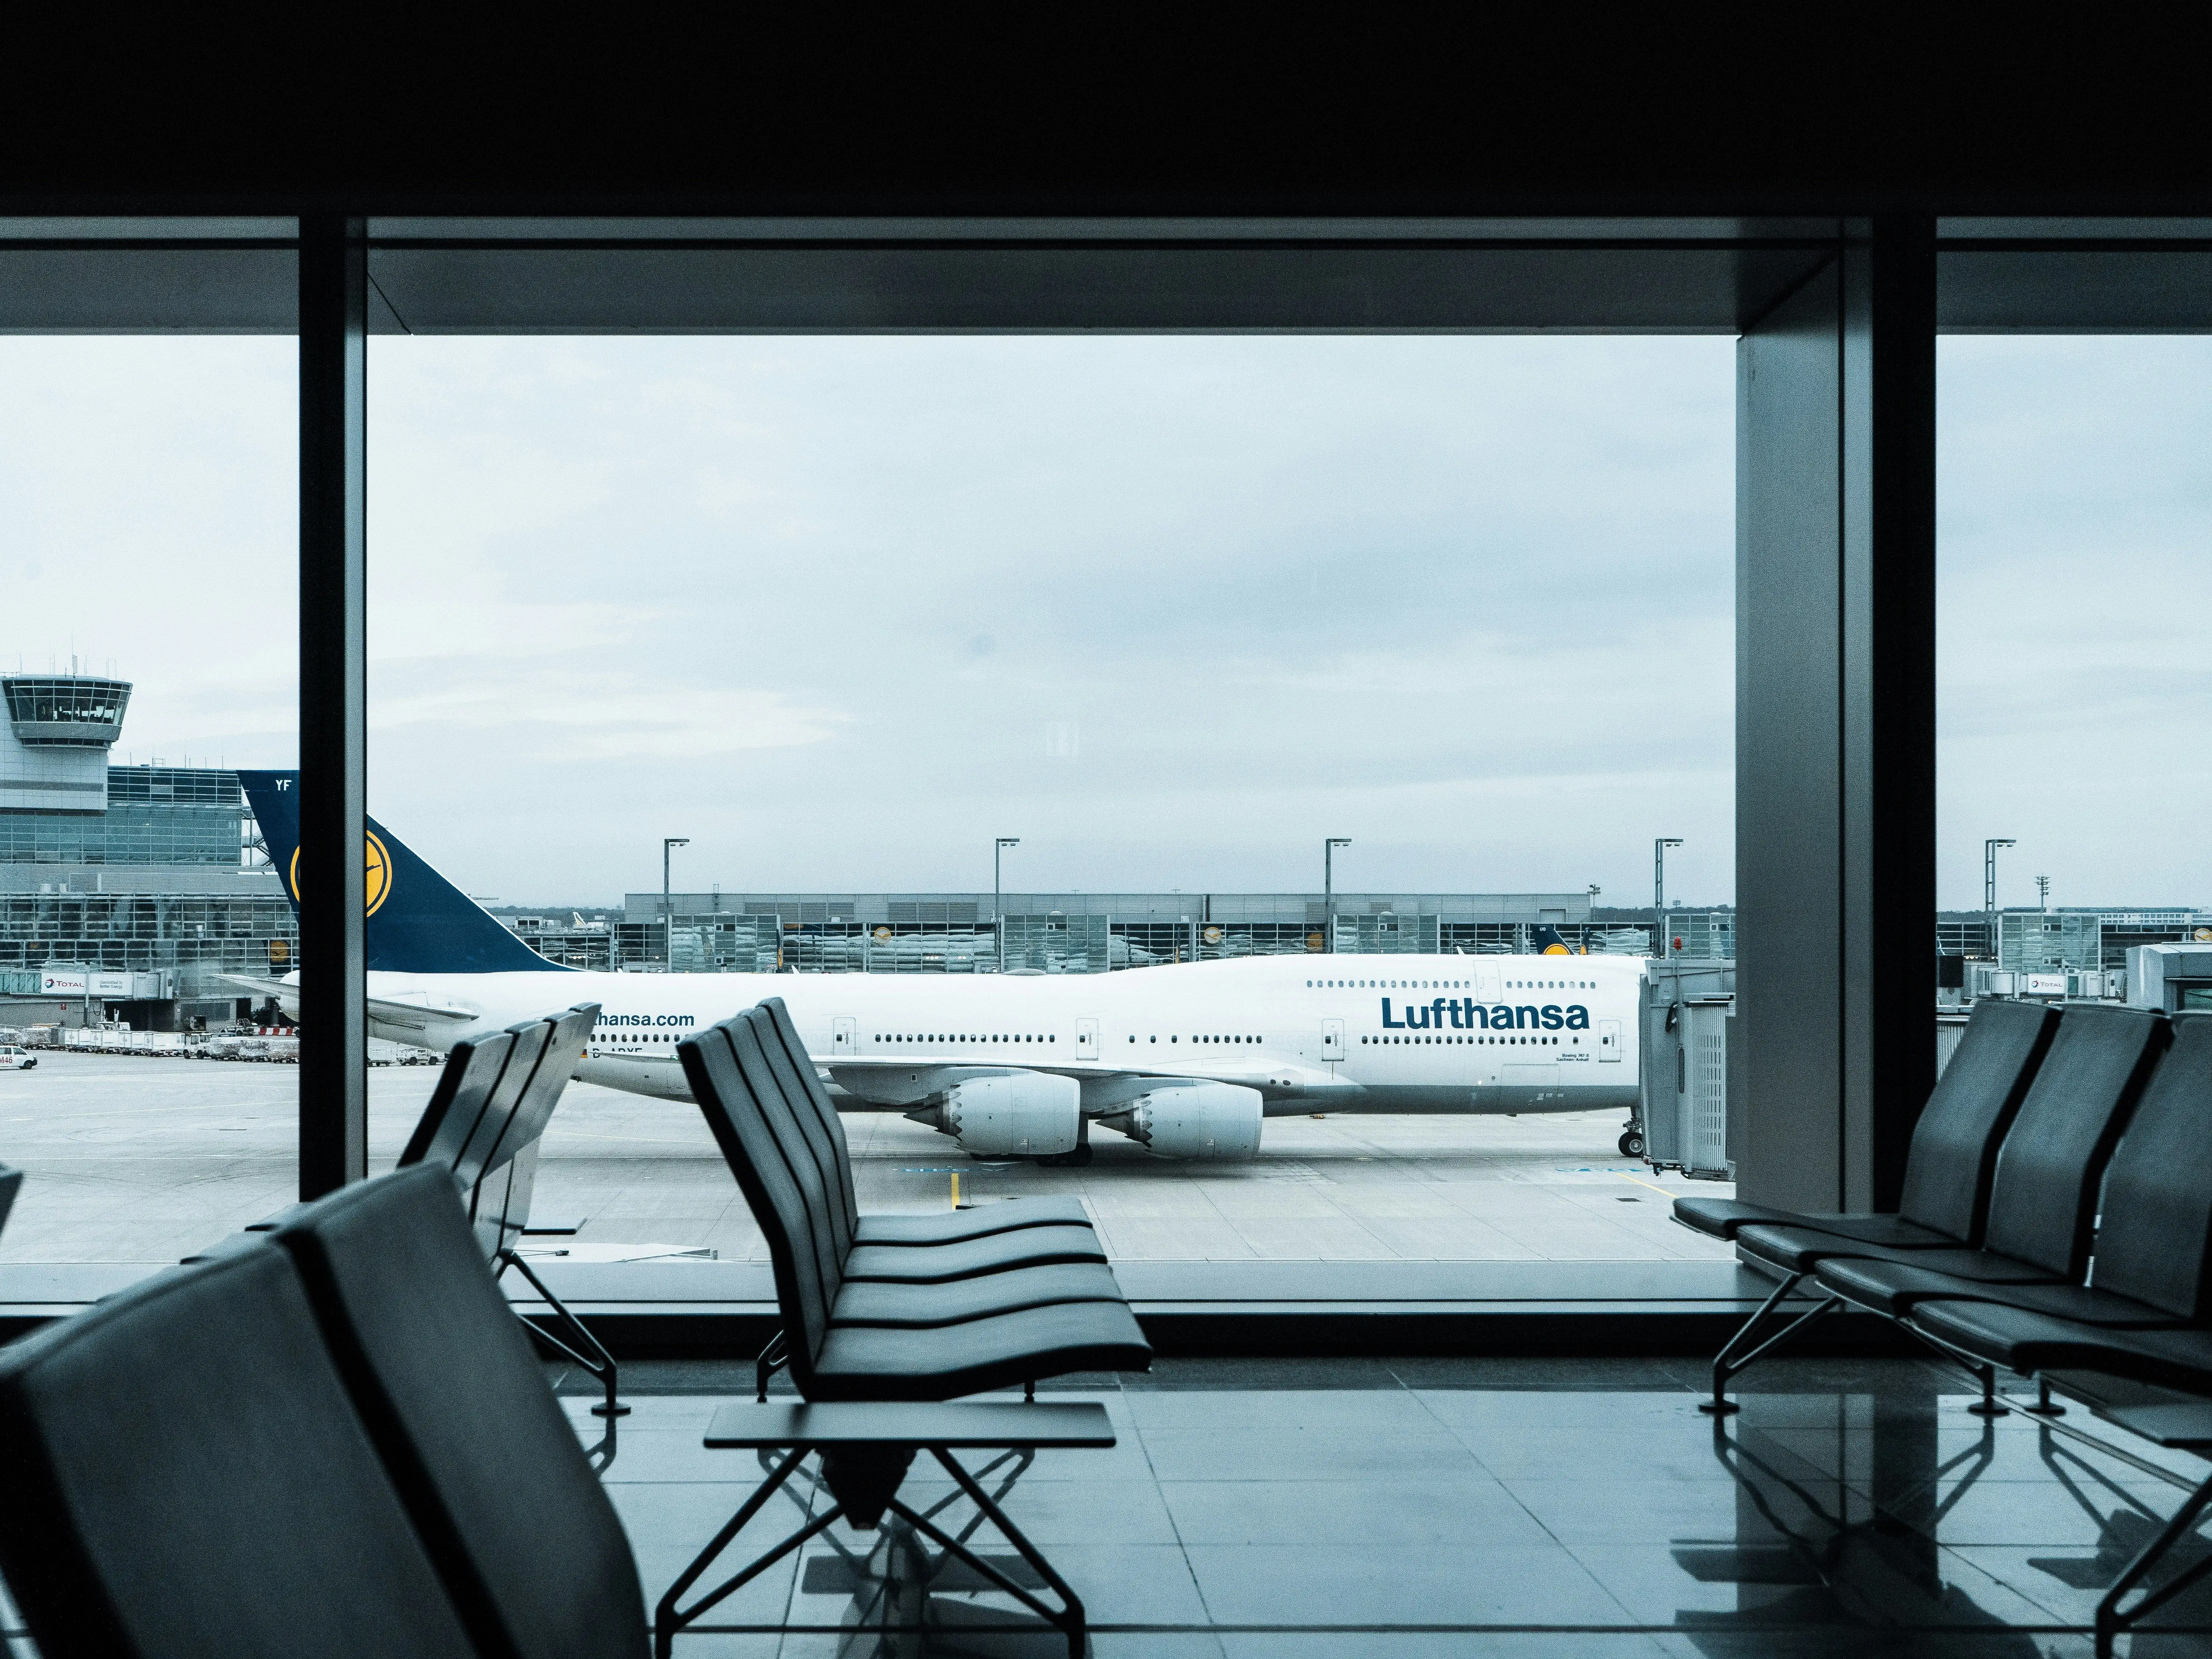 Компанія Lufthansa тимчасово припинила польоти на деяких популярних маршрутах. Під які напрямки саме це стосується та що сталося, невідомо.